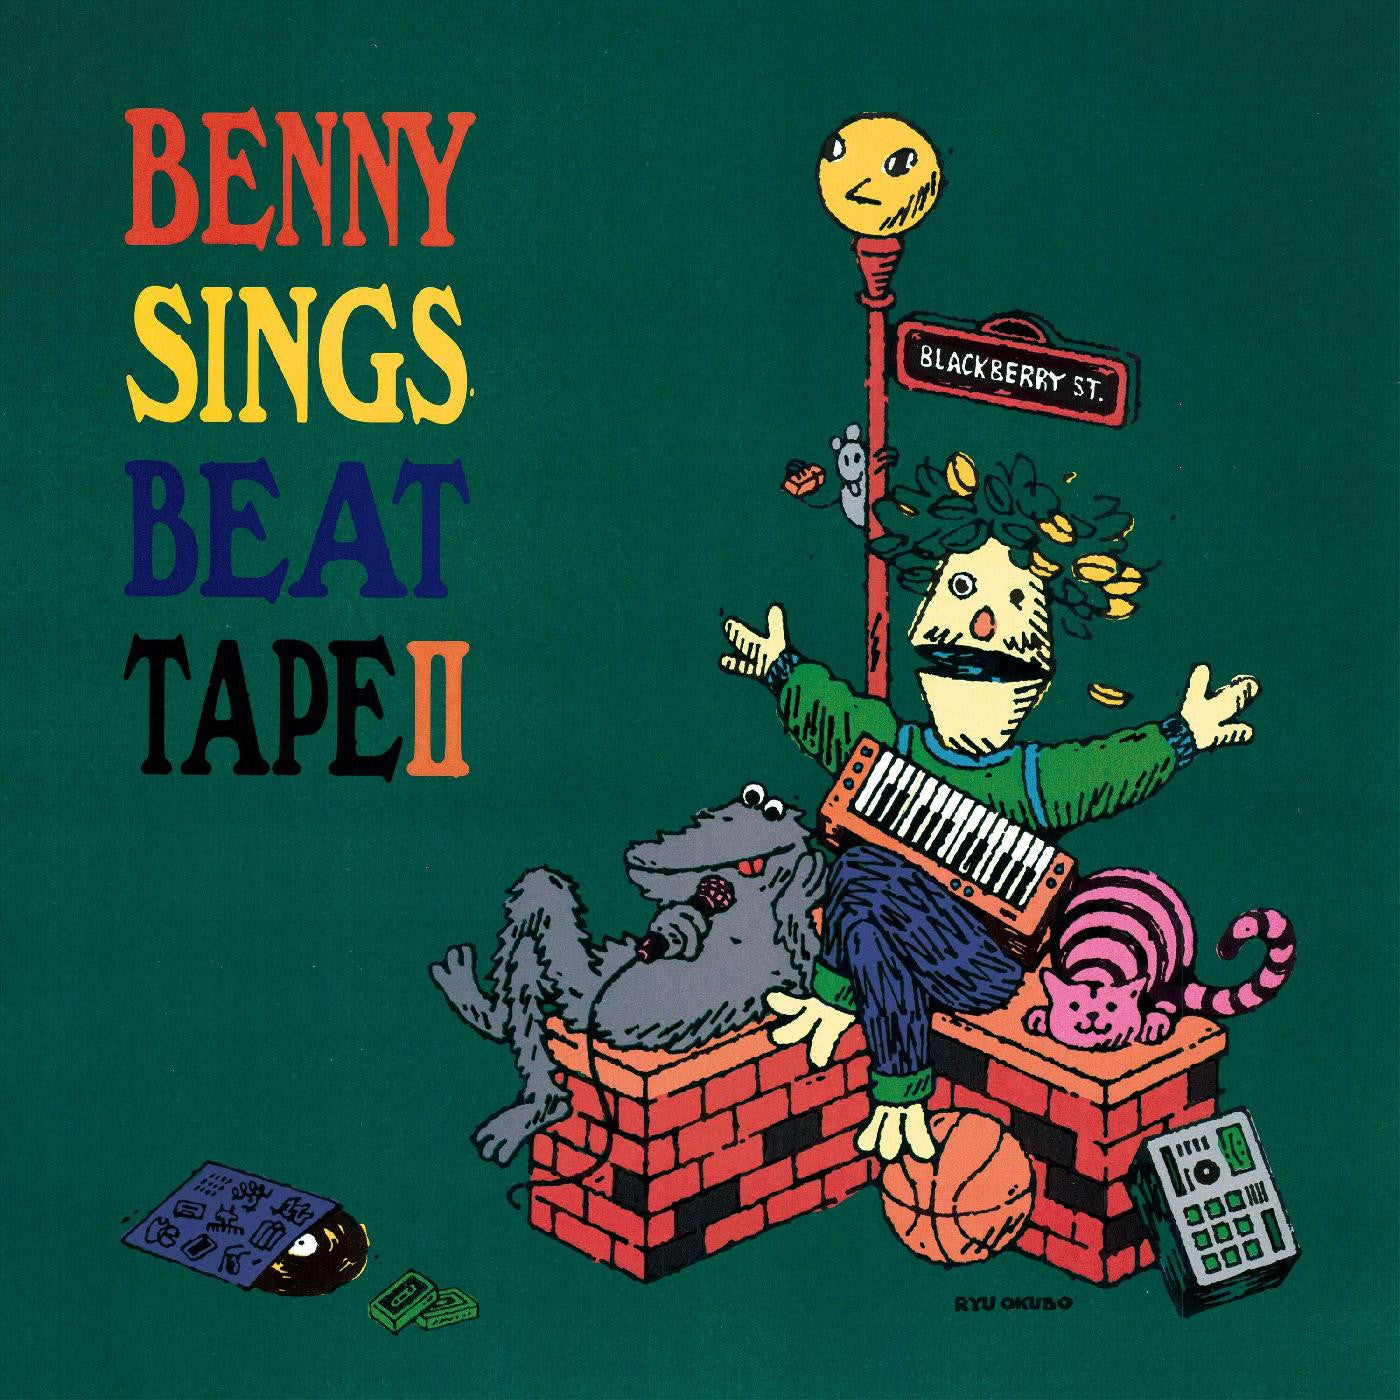 BENNY SINGS - BEAT TAPE II Vinyl LP